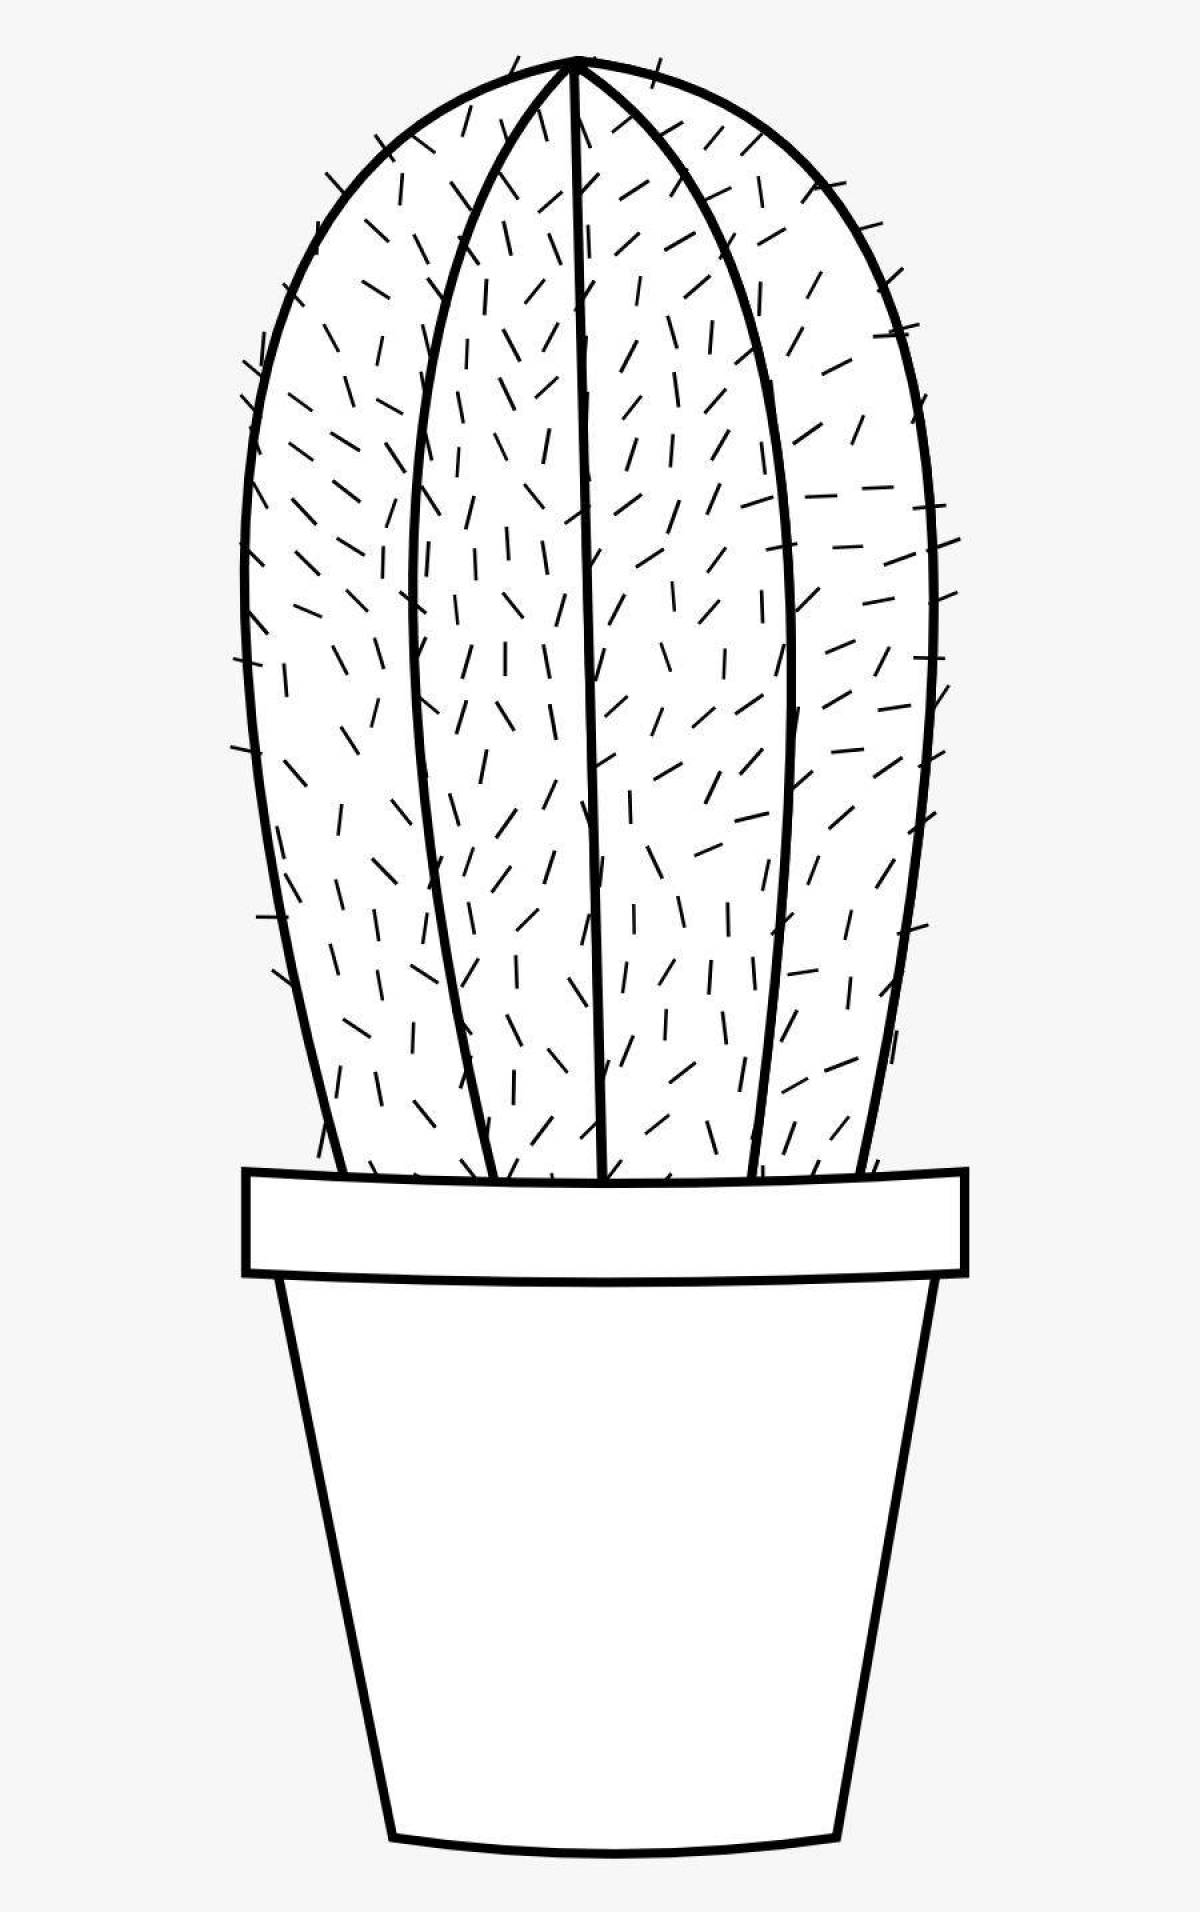 Playful cactus in a pot